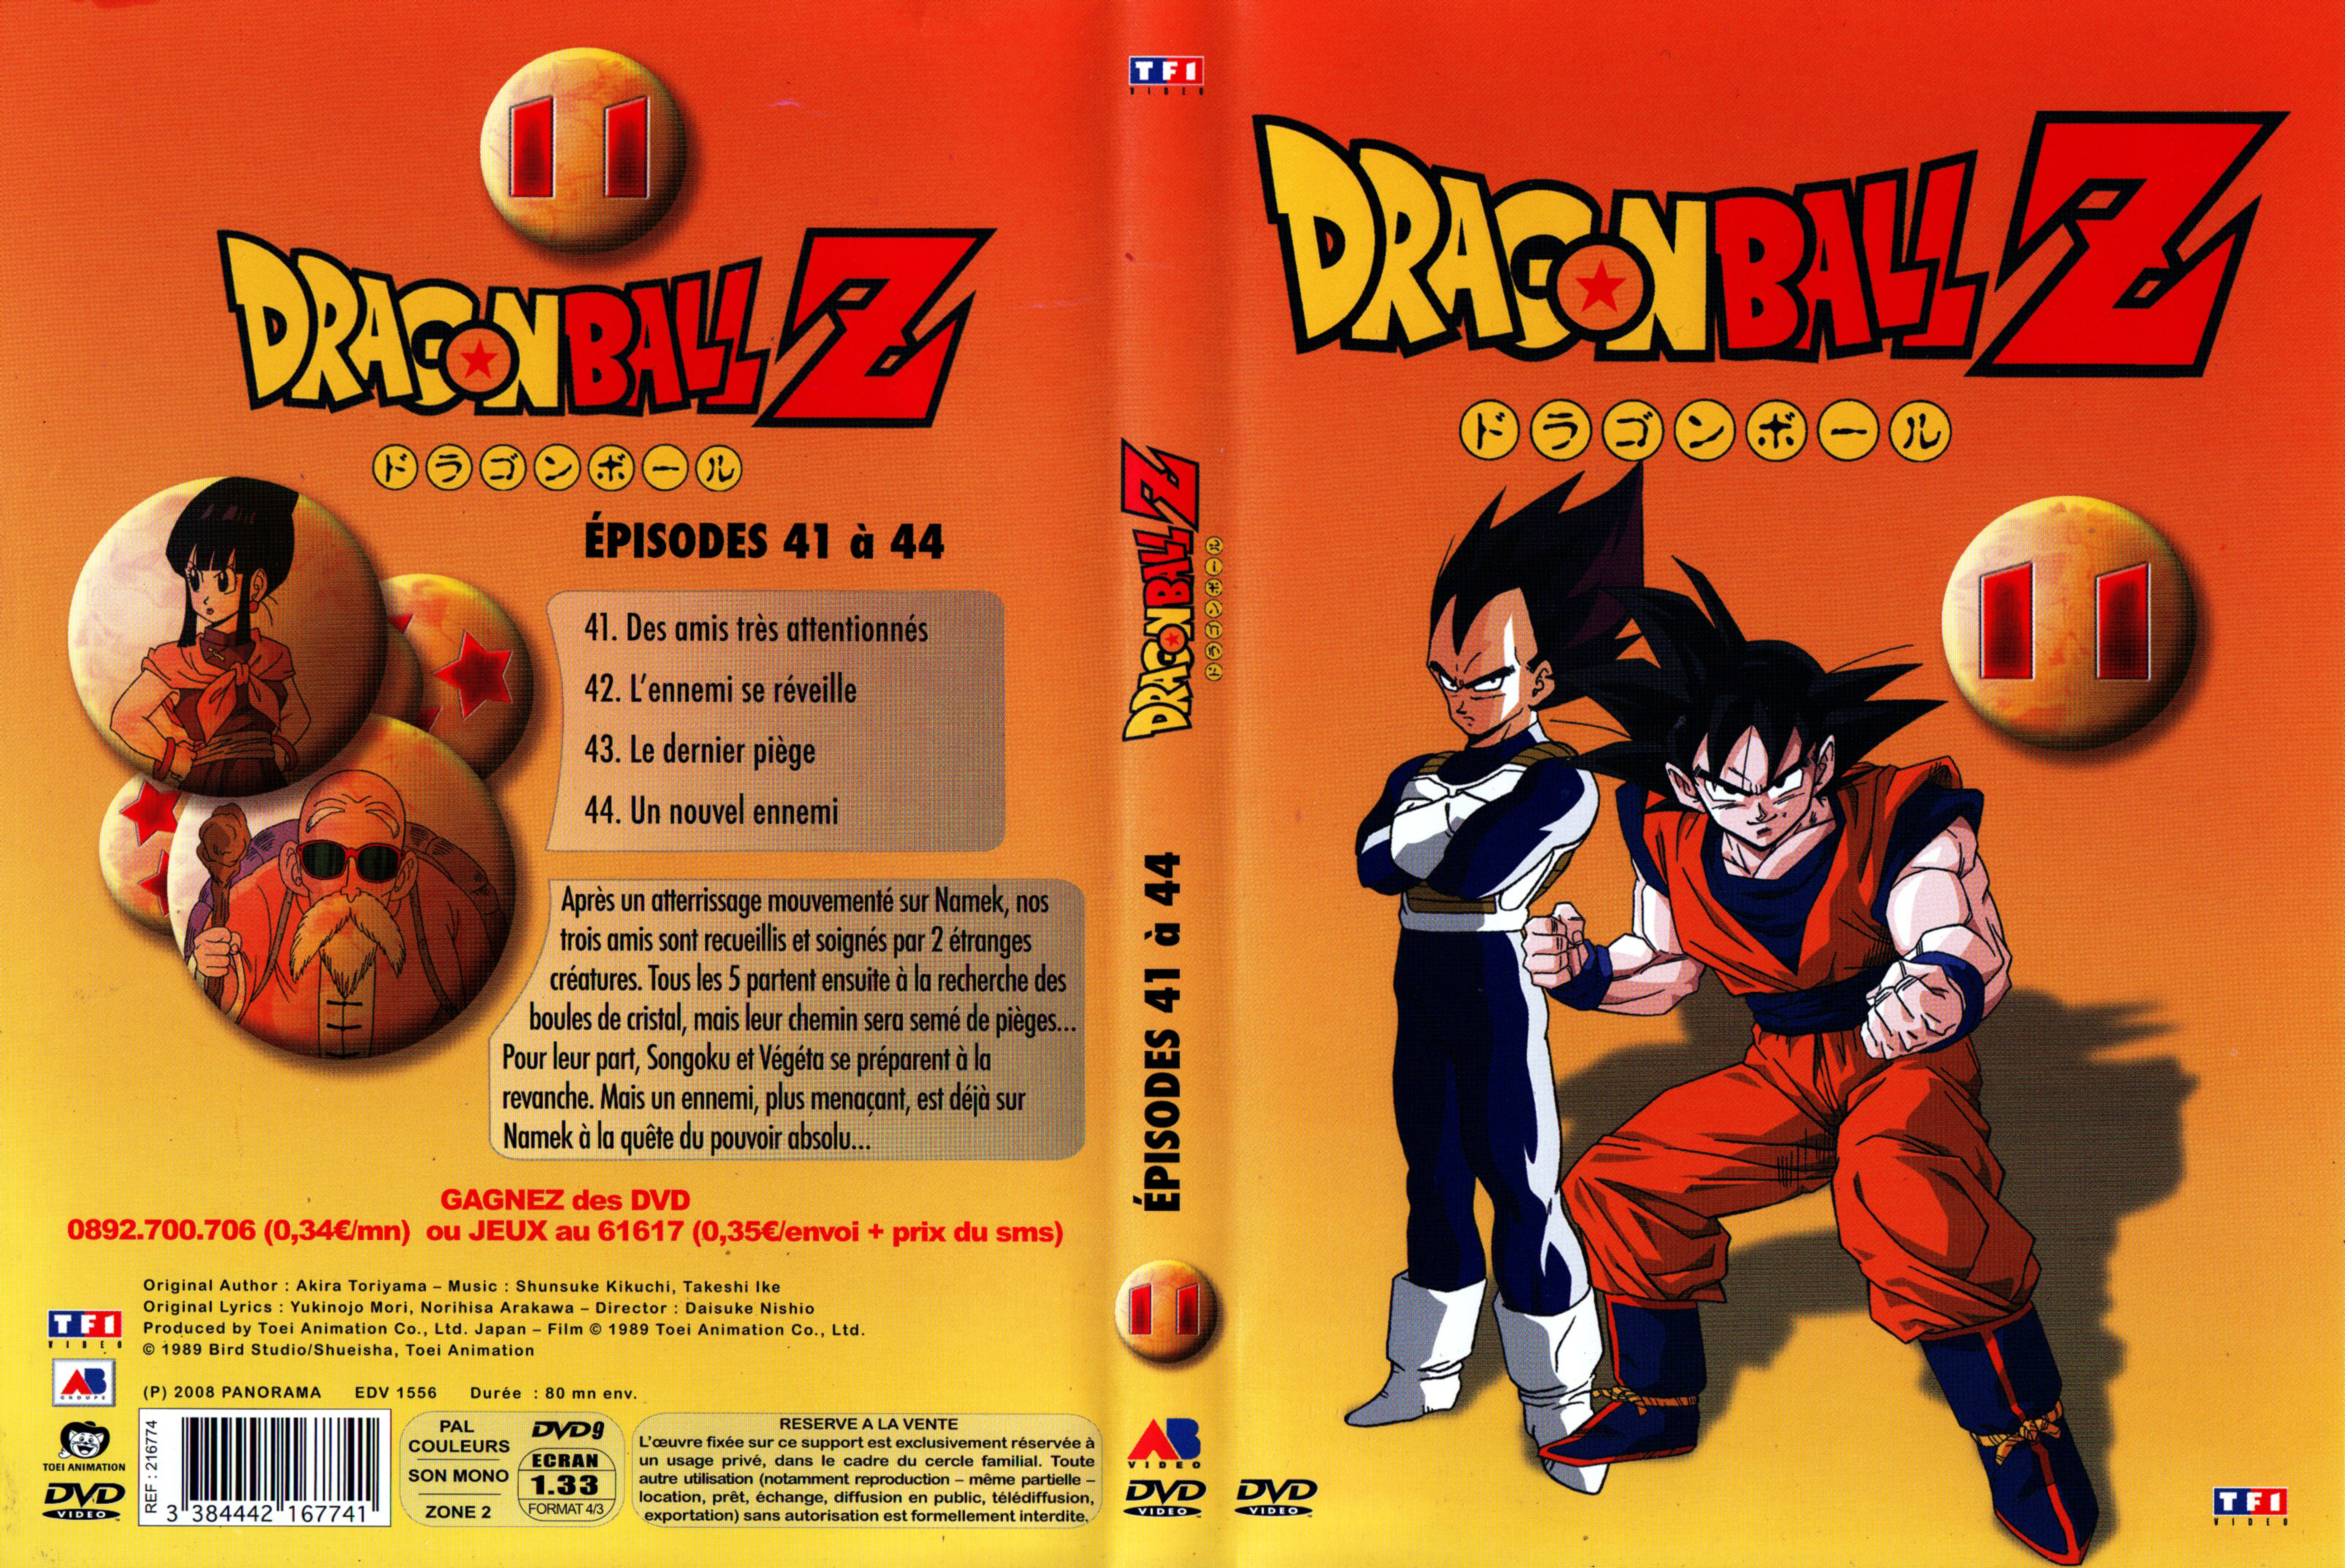 Jaquette DVD Dragon Ball Z vol 11 v2